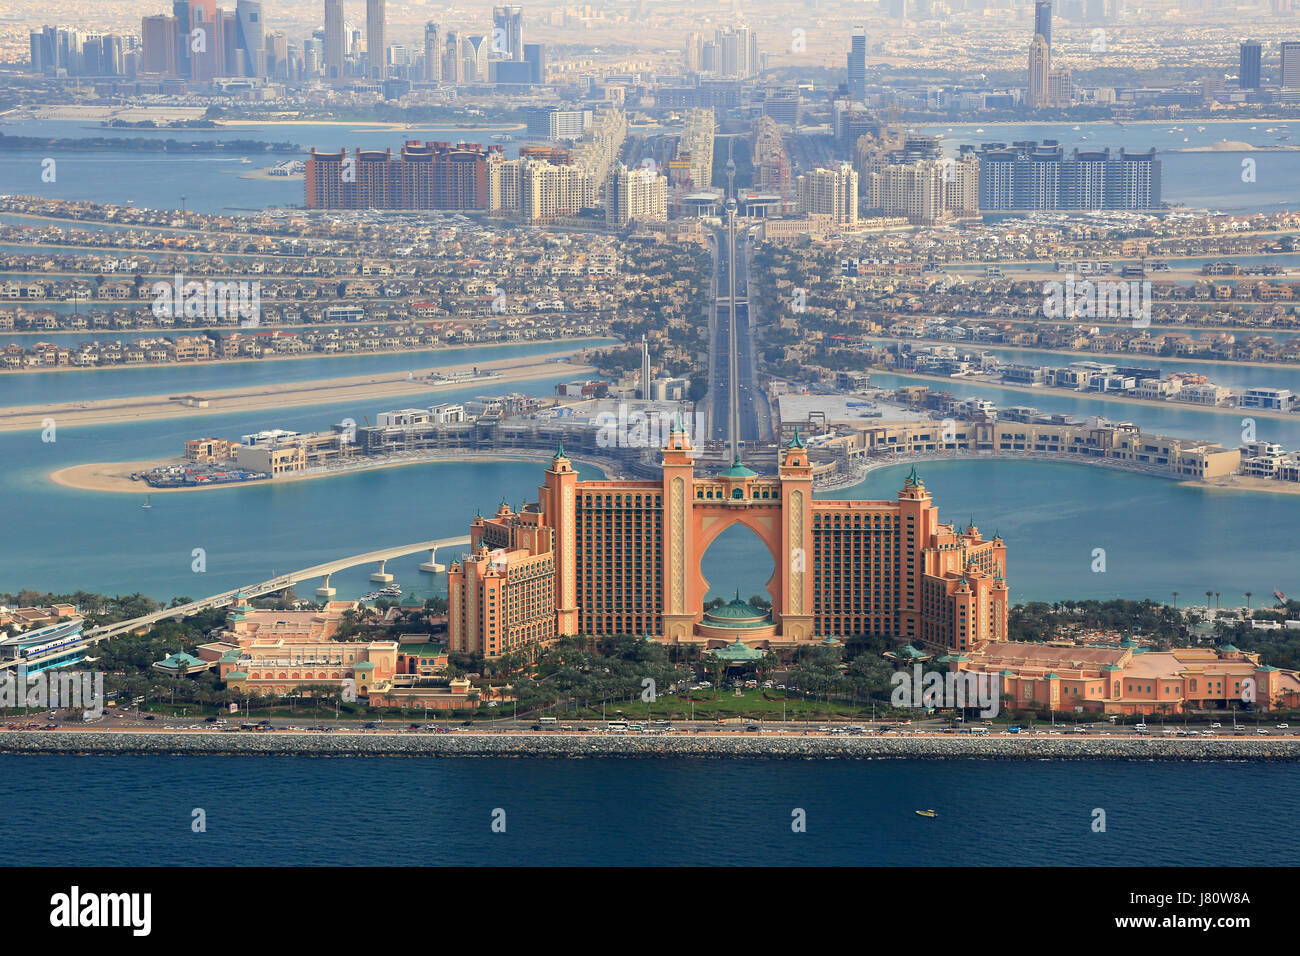 Dubaï, l'hôtel Atlantis Palm Island Vue aérienne des eau photographie Banque D'Images